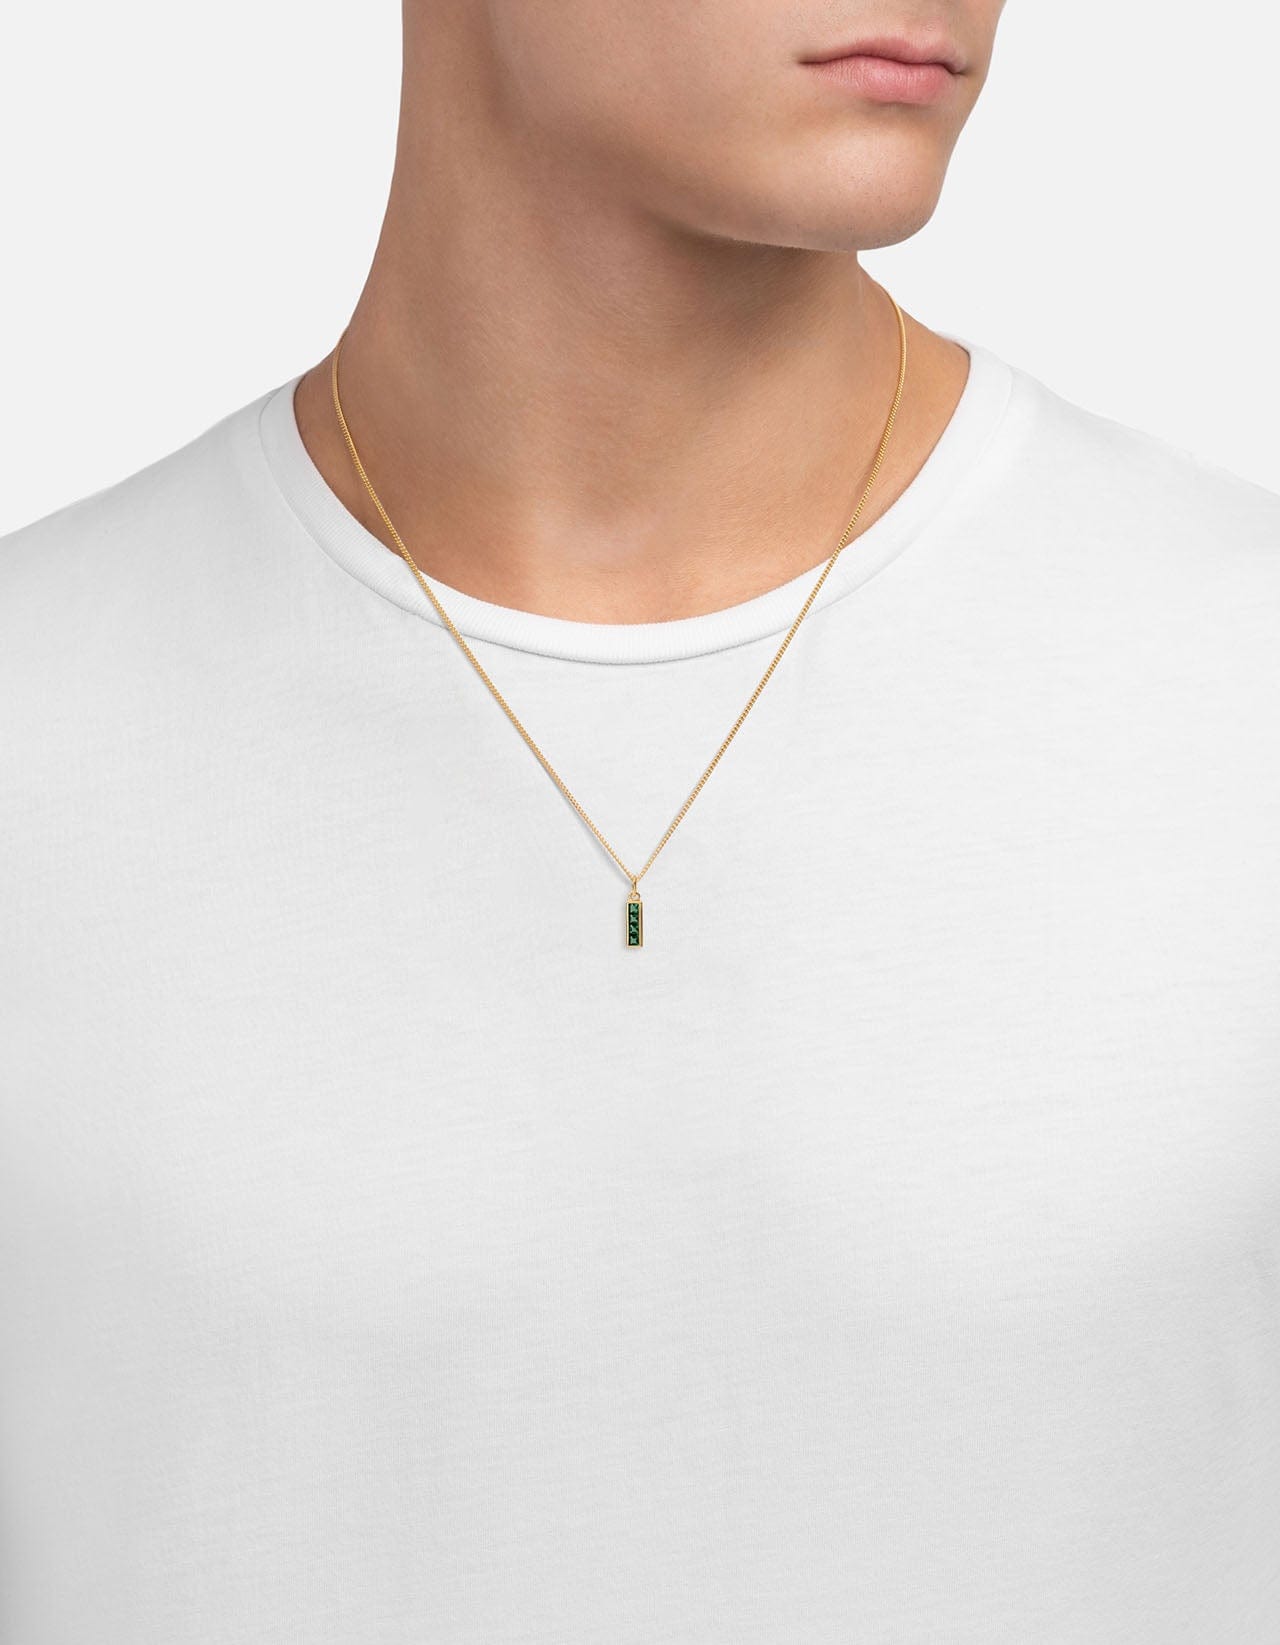 Totem Quartz Necklace, Gold Vermeil